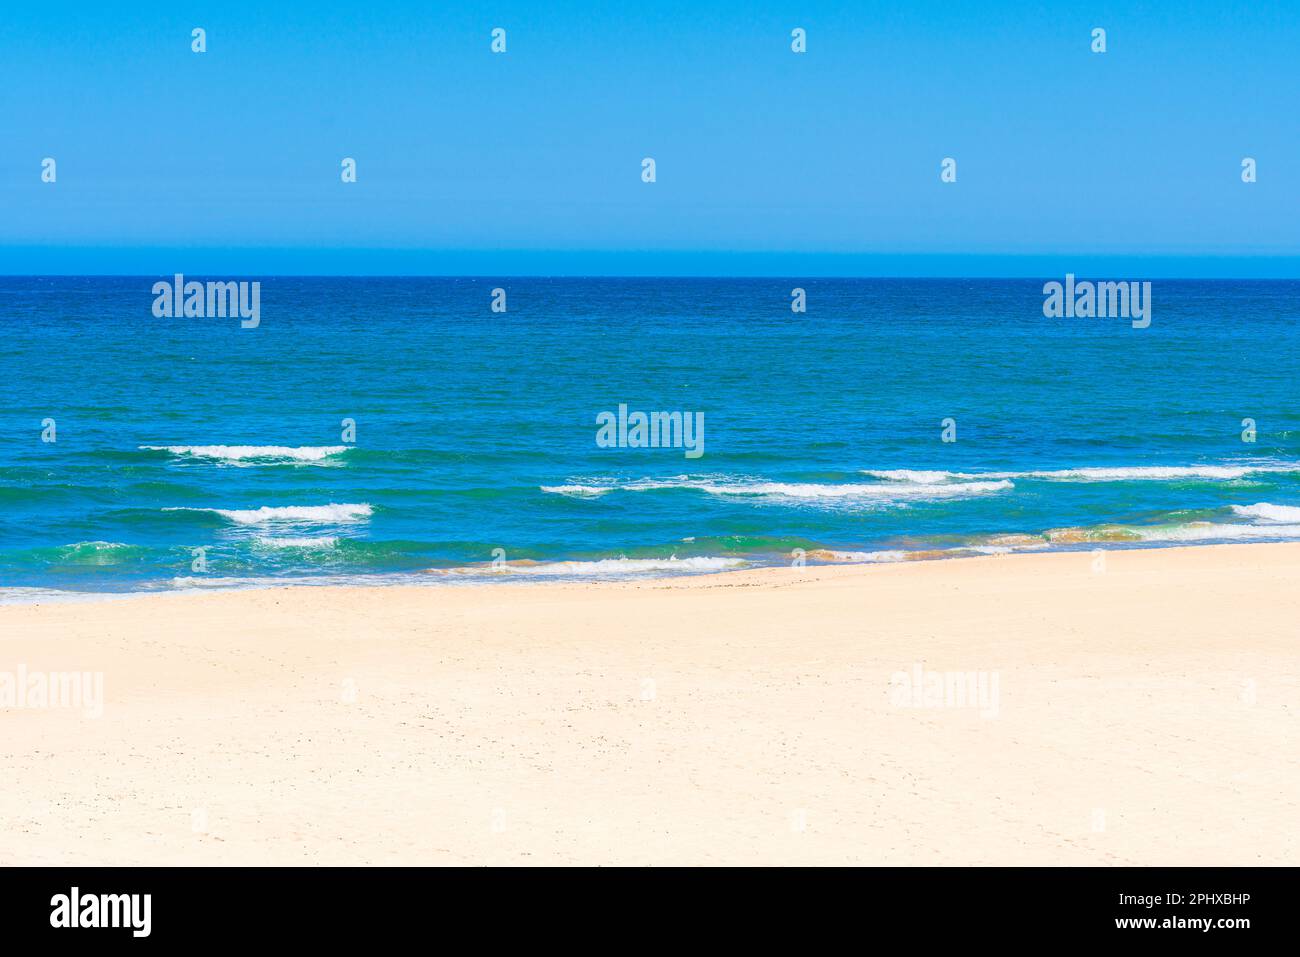 A beach with a blue sky Stock Photo